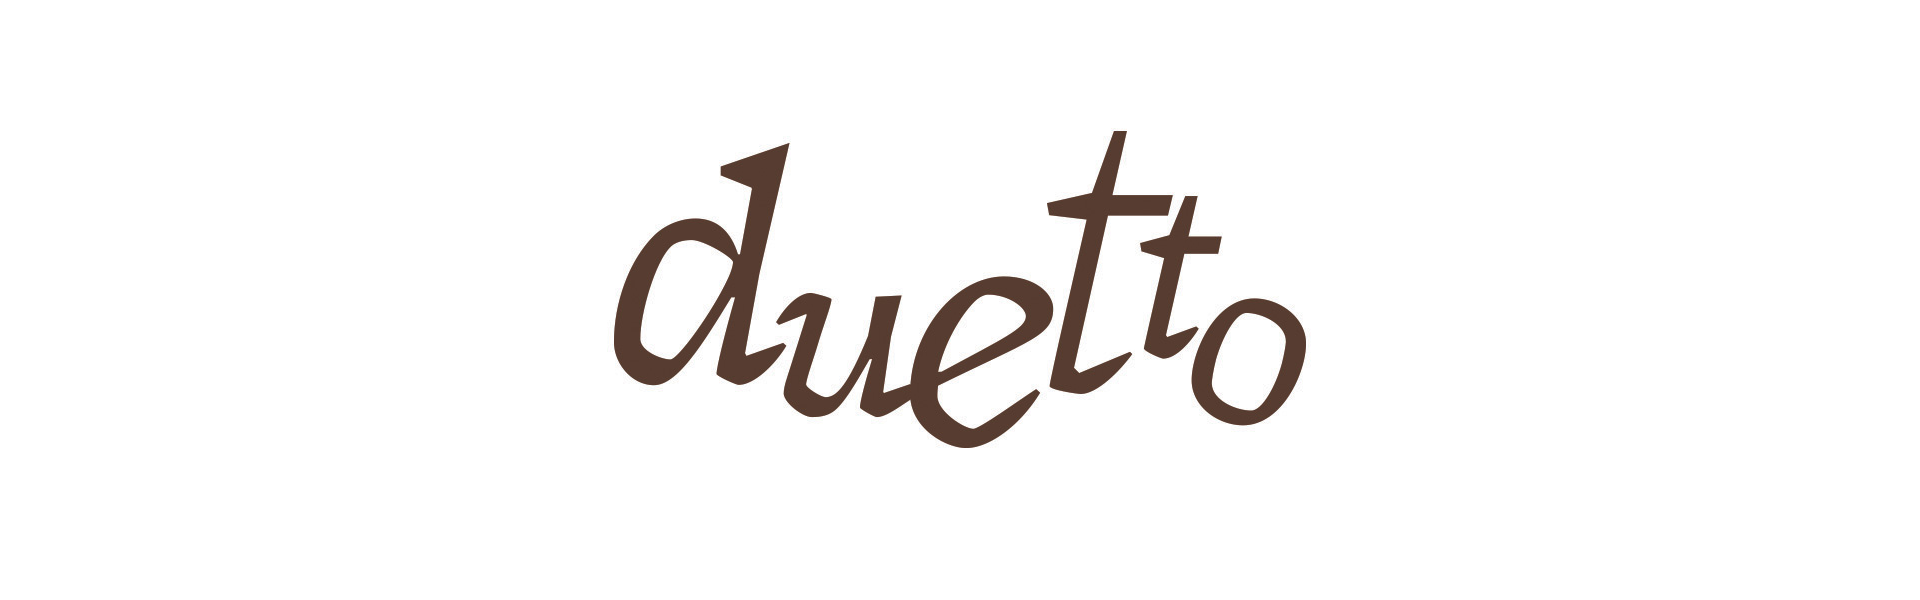 duetto_logo2_1920